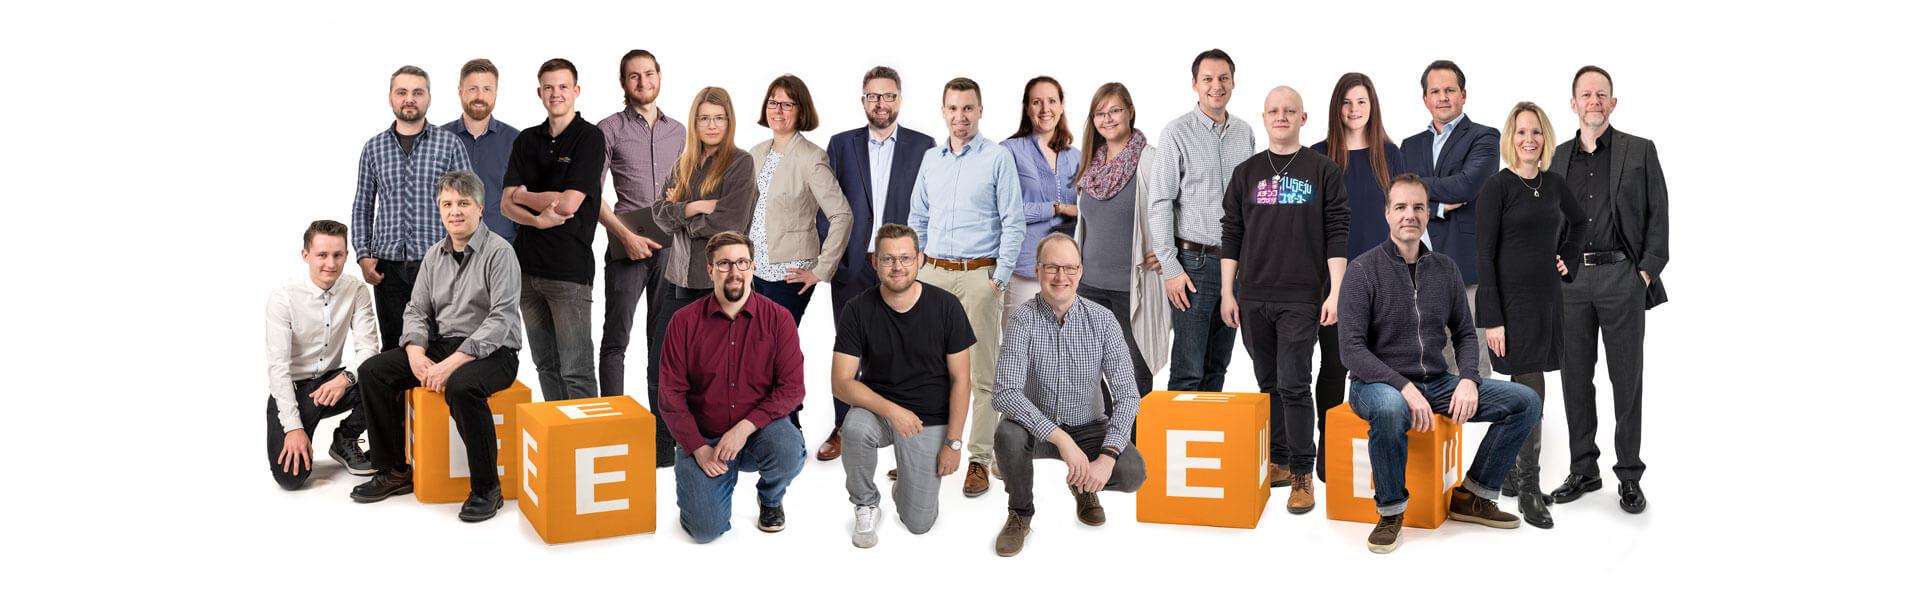 eMotivo GmbH - Werde Teil des Teams und starte deine Karriere als Fachinformatiker/in (m/w/d) in Jesteburg!